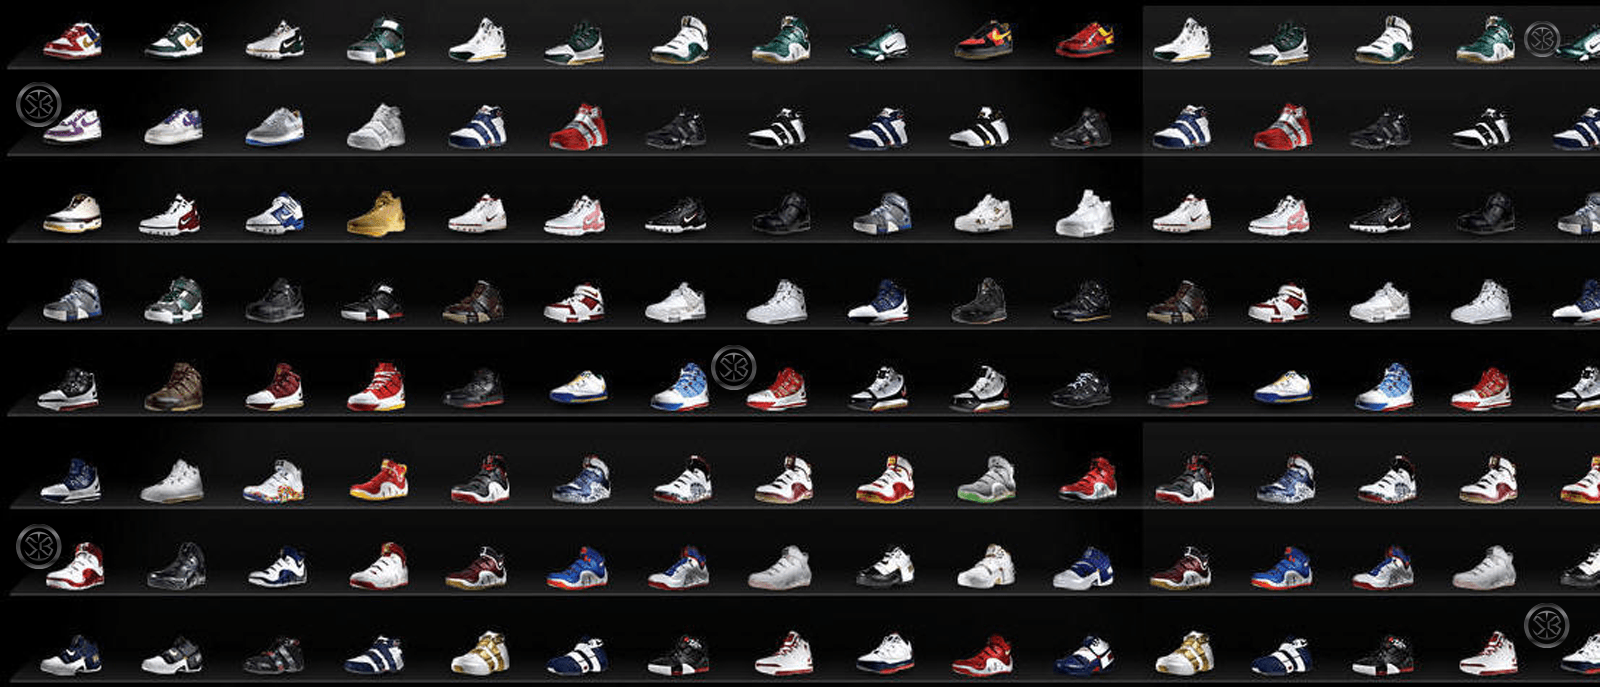 sneakers wallpaper  A x e l A l e x i s  Flickr